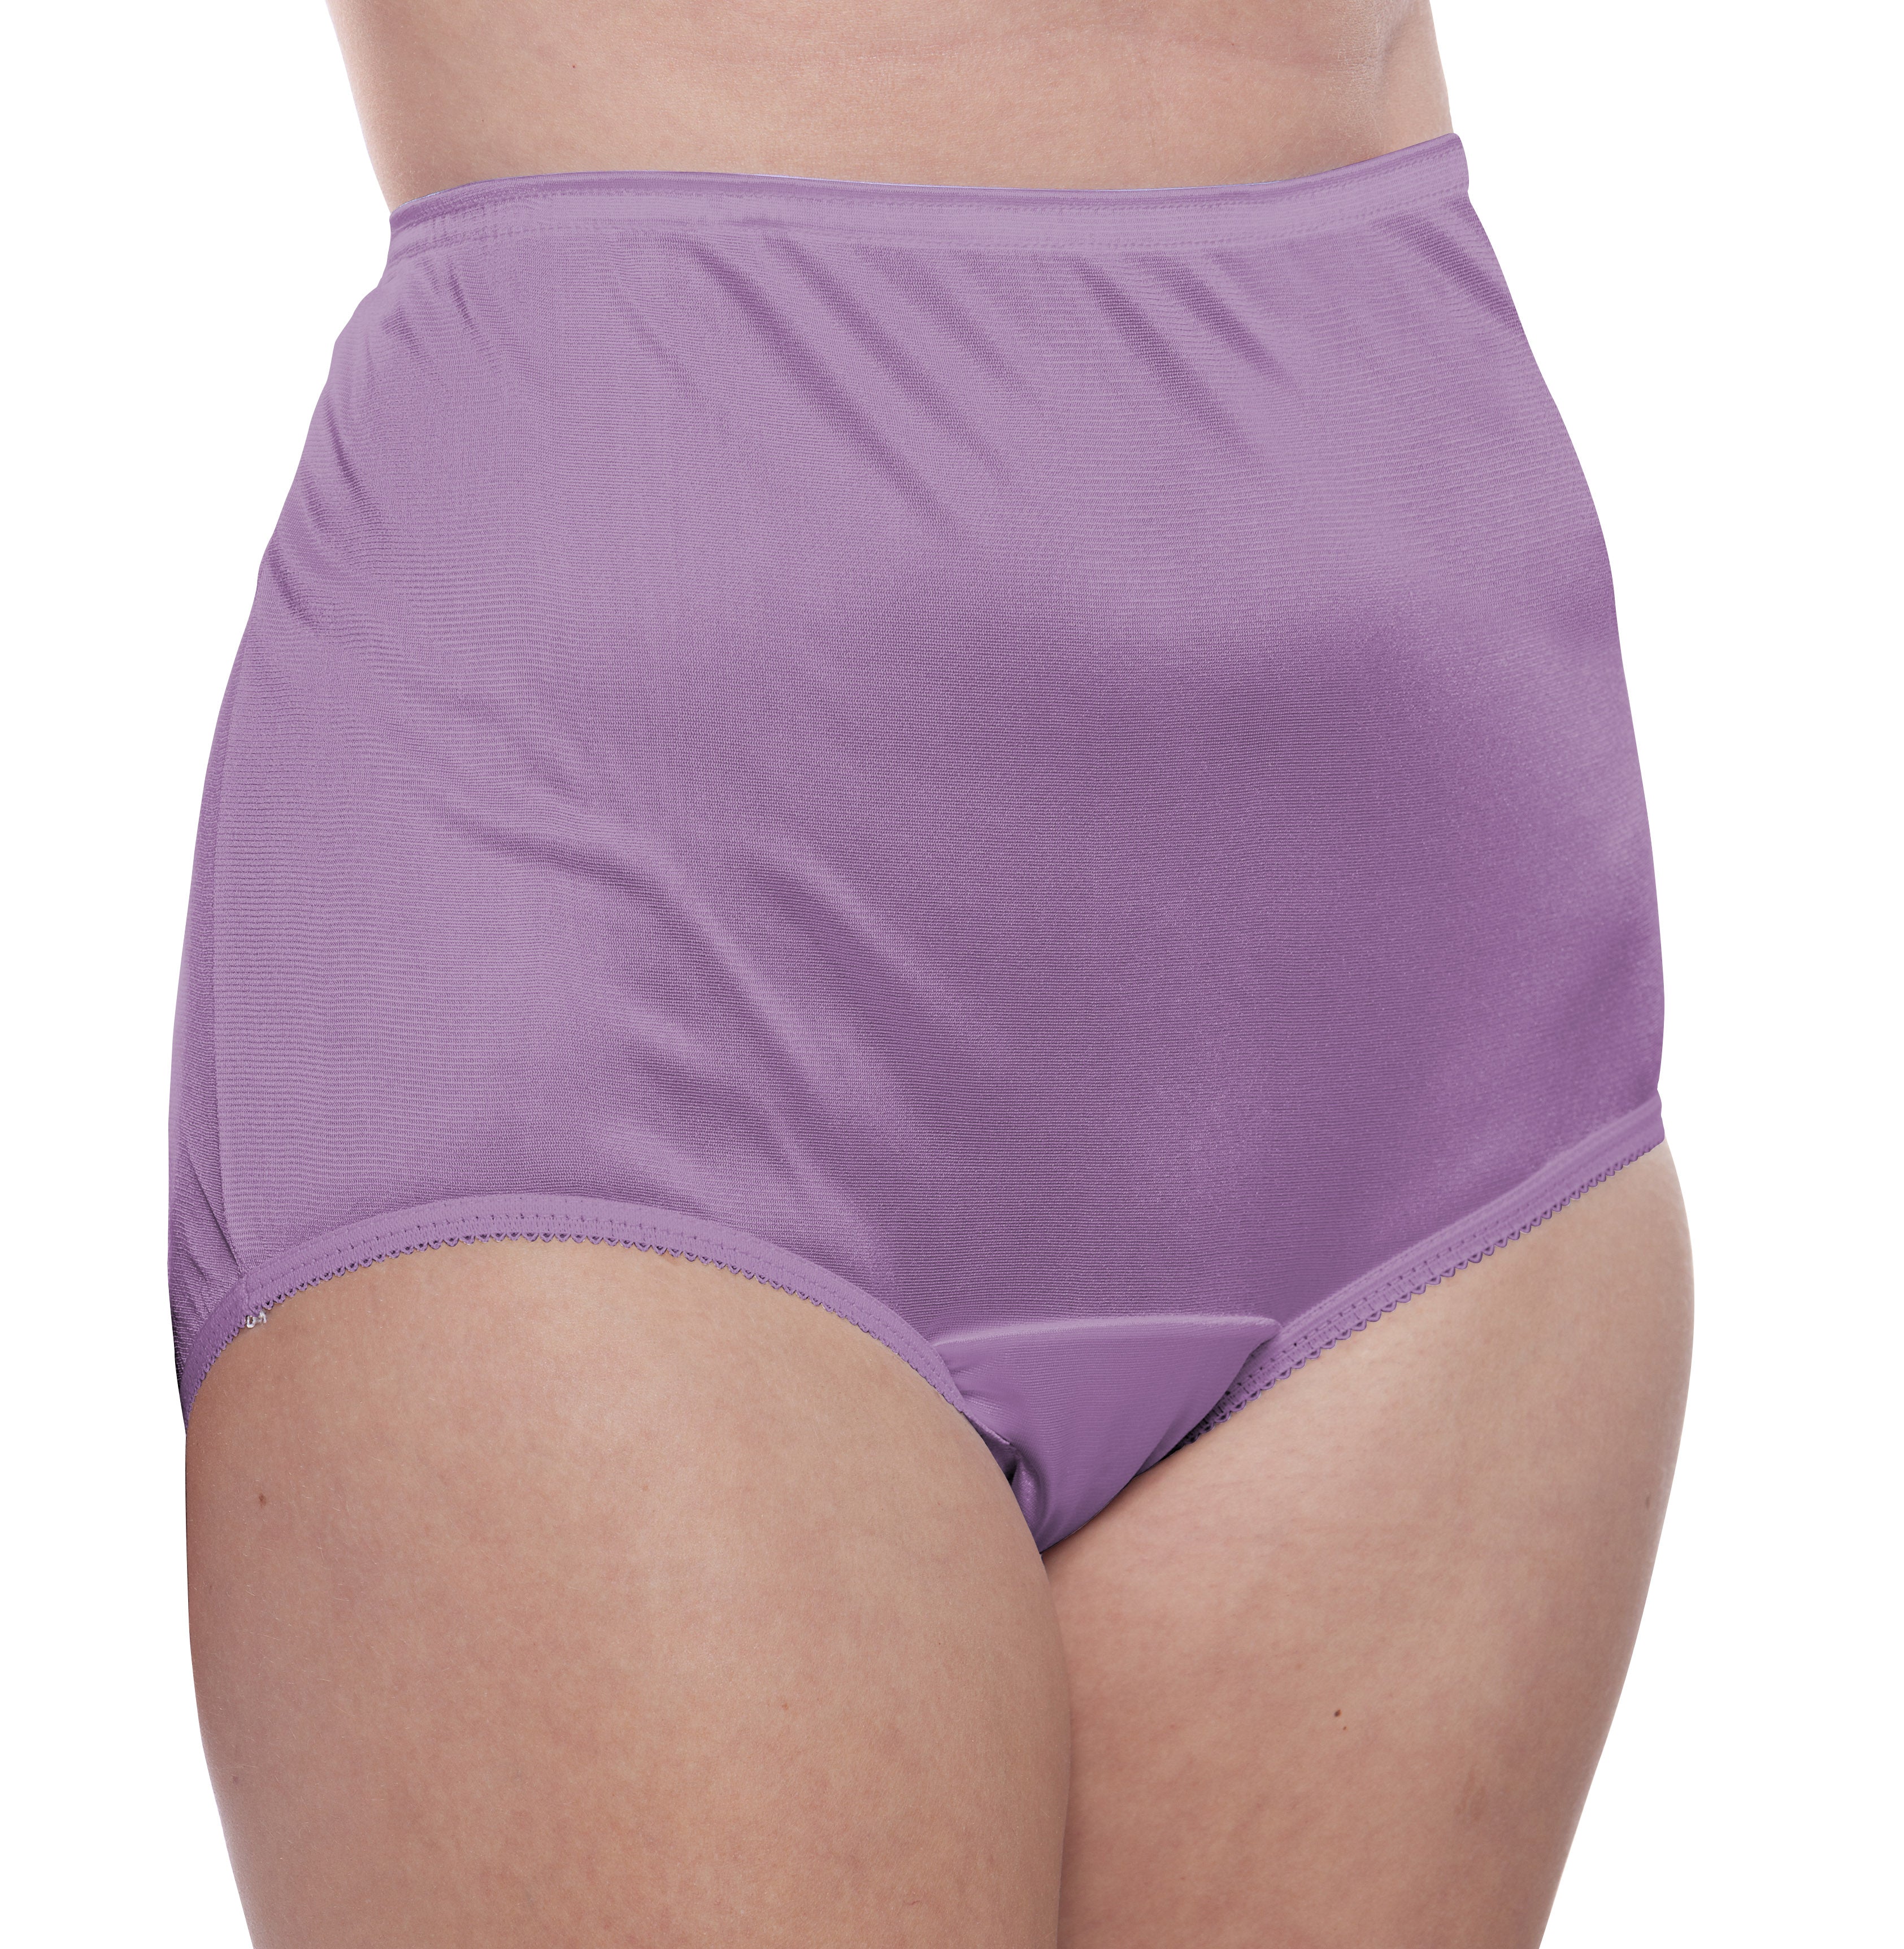 Plain Jane Nylon Panty Surprise Color 10 Pack